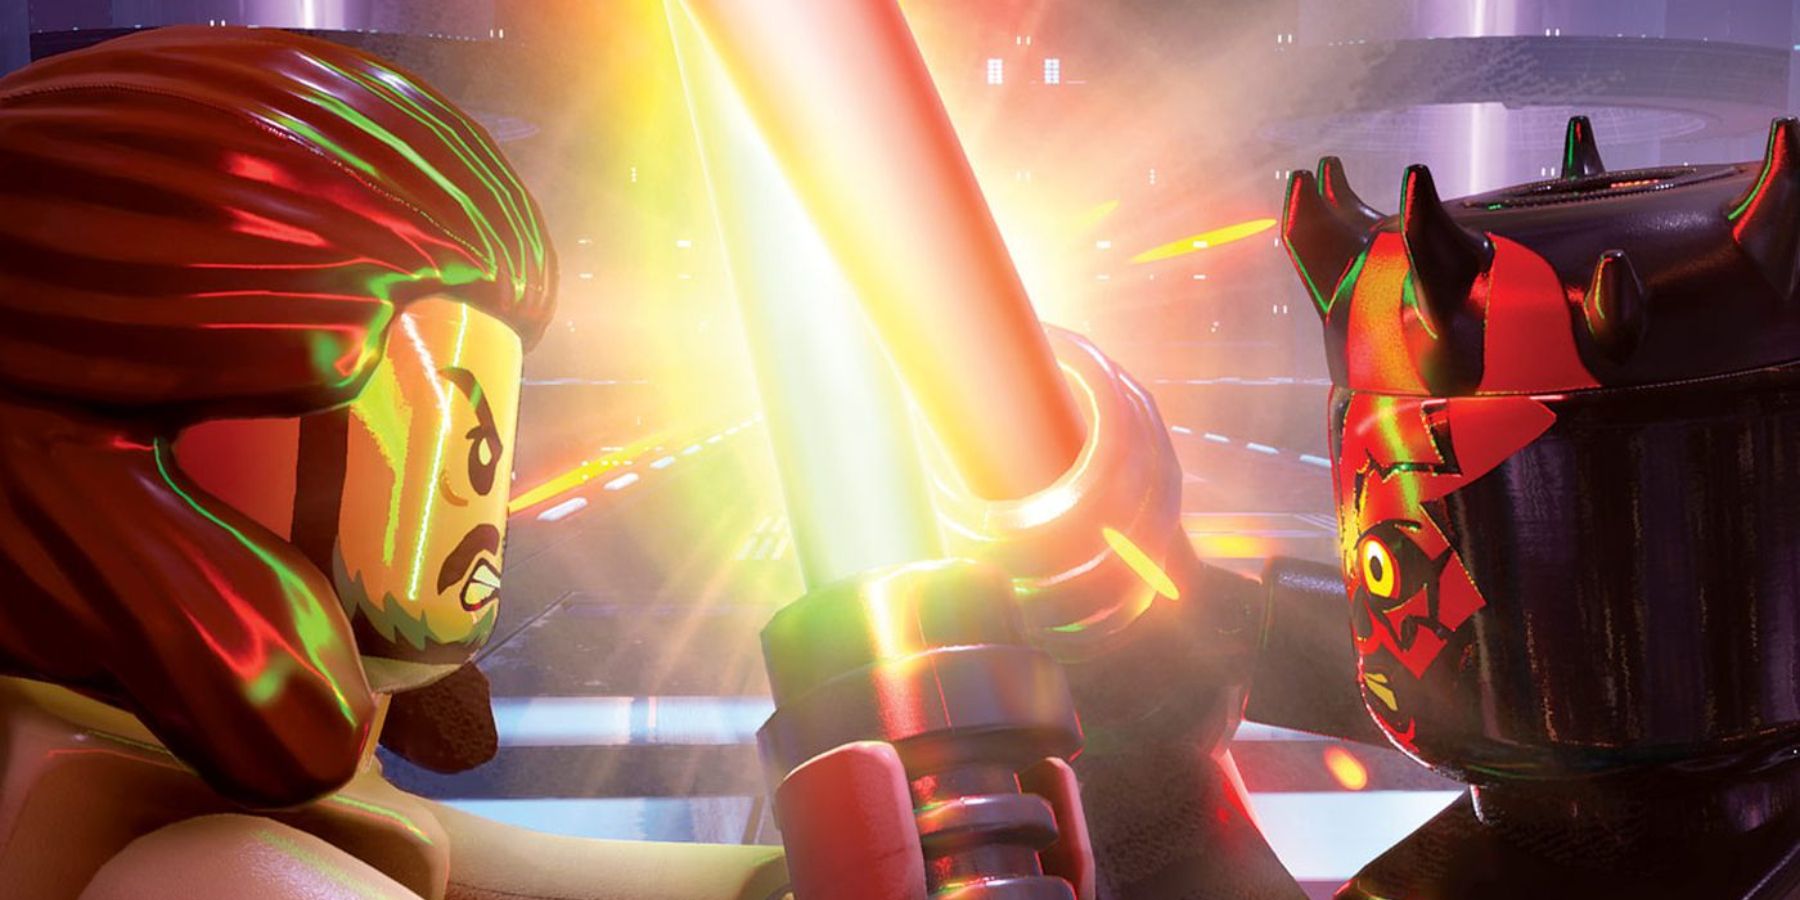 Lego Star Wars Skywalker Saga Maul